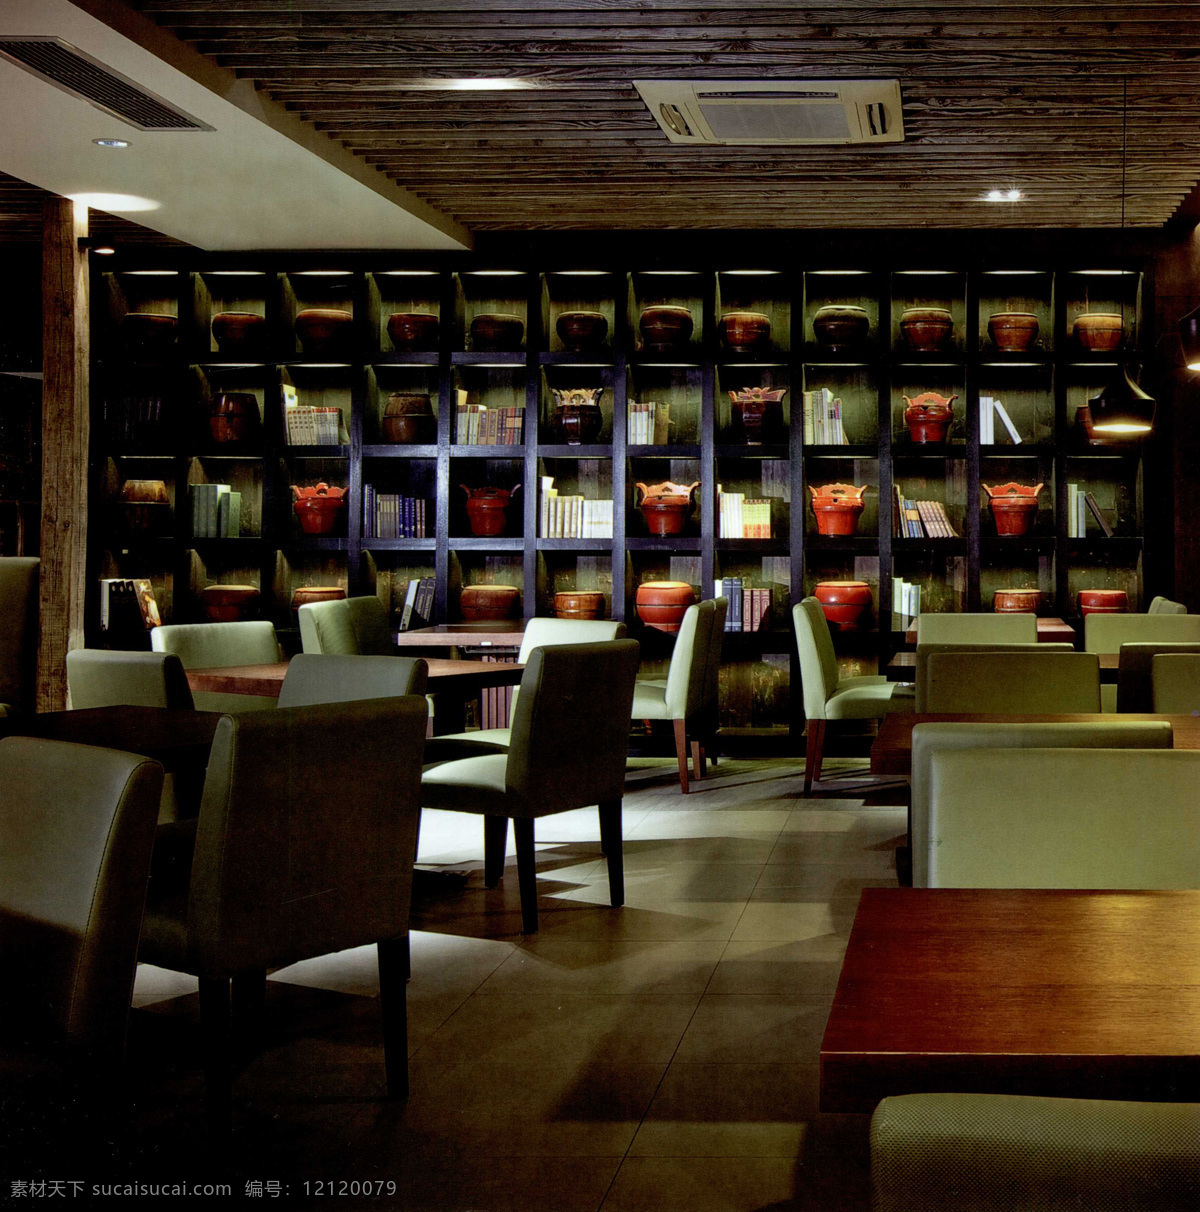 室内设计 实景 照片 资料图片 餐厅 建筑园林 室内 室内摄影 装饰 资料 过厅 装饰素材